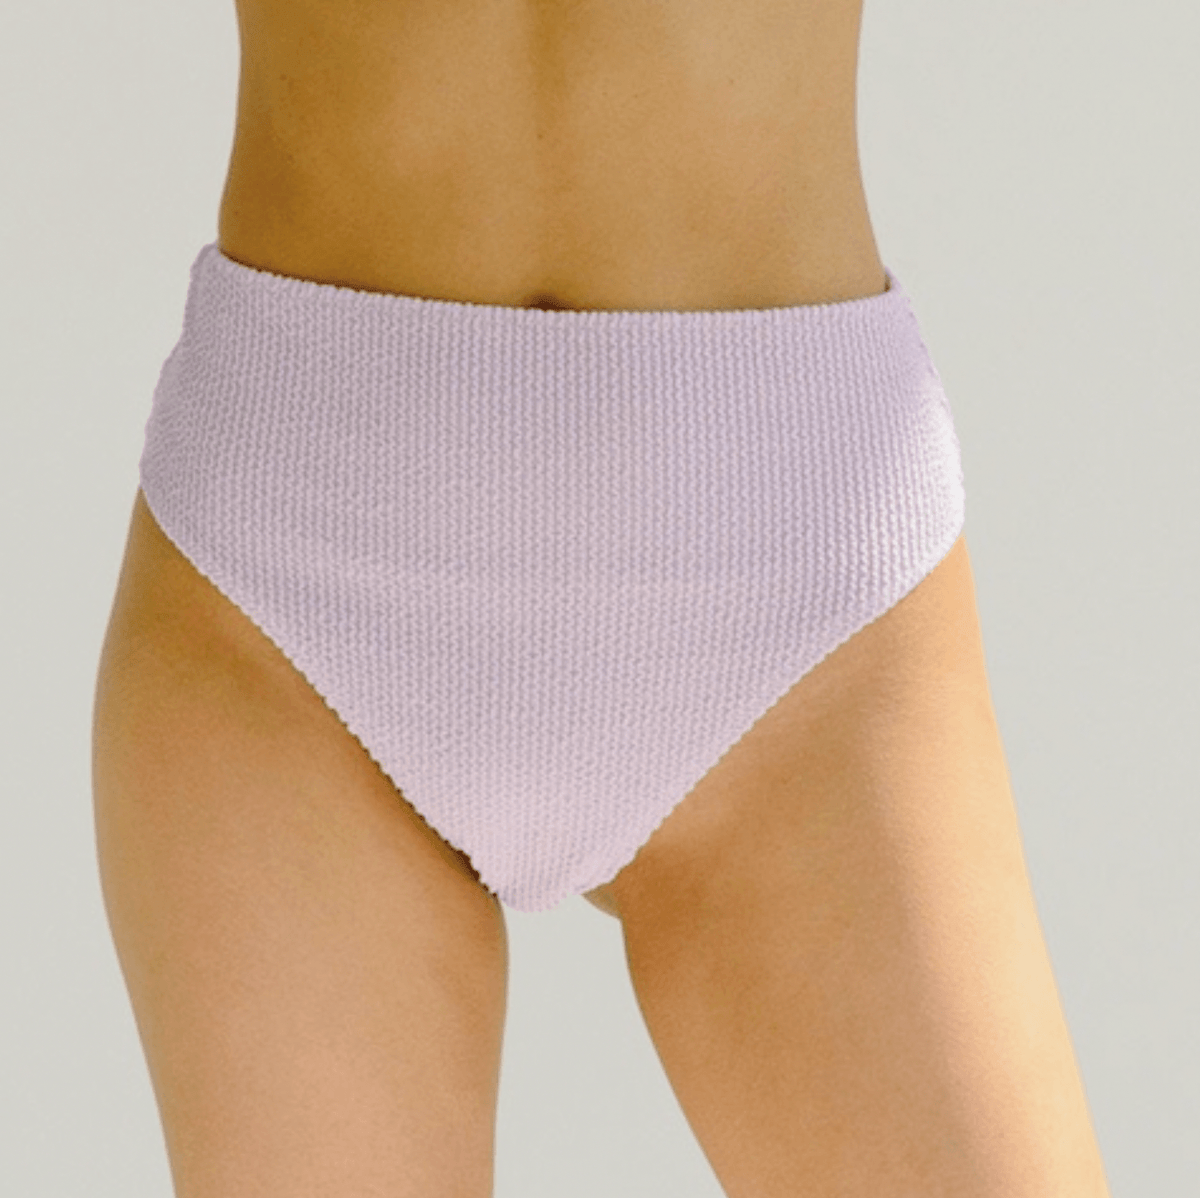 Period Underwear / Menstrual Panties